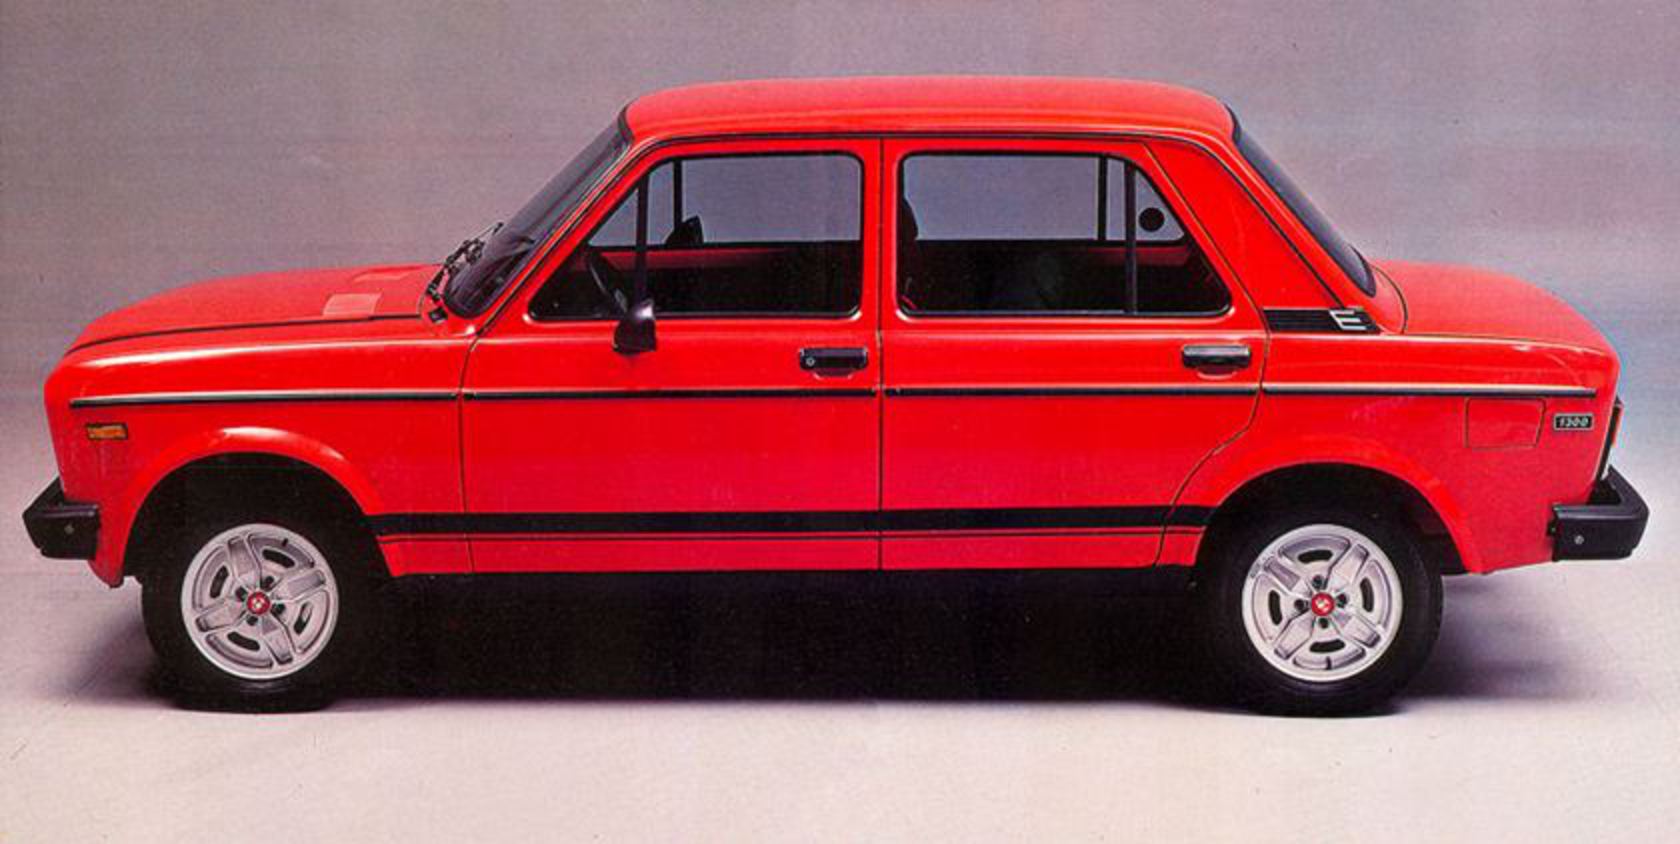 Fiat 128 Abarth (1977). libellÃ©s : 1977, Fiat 128